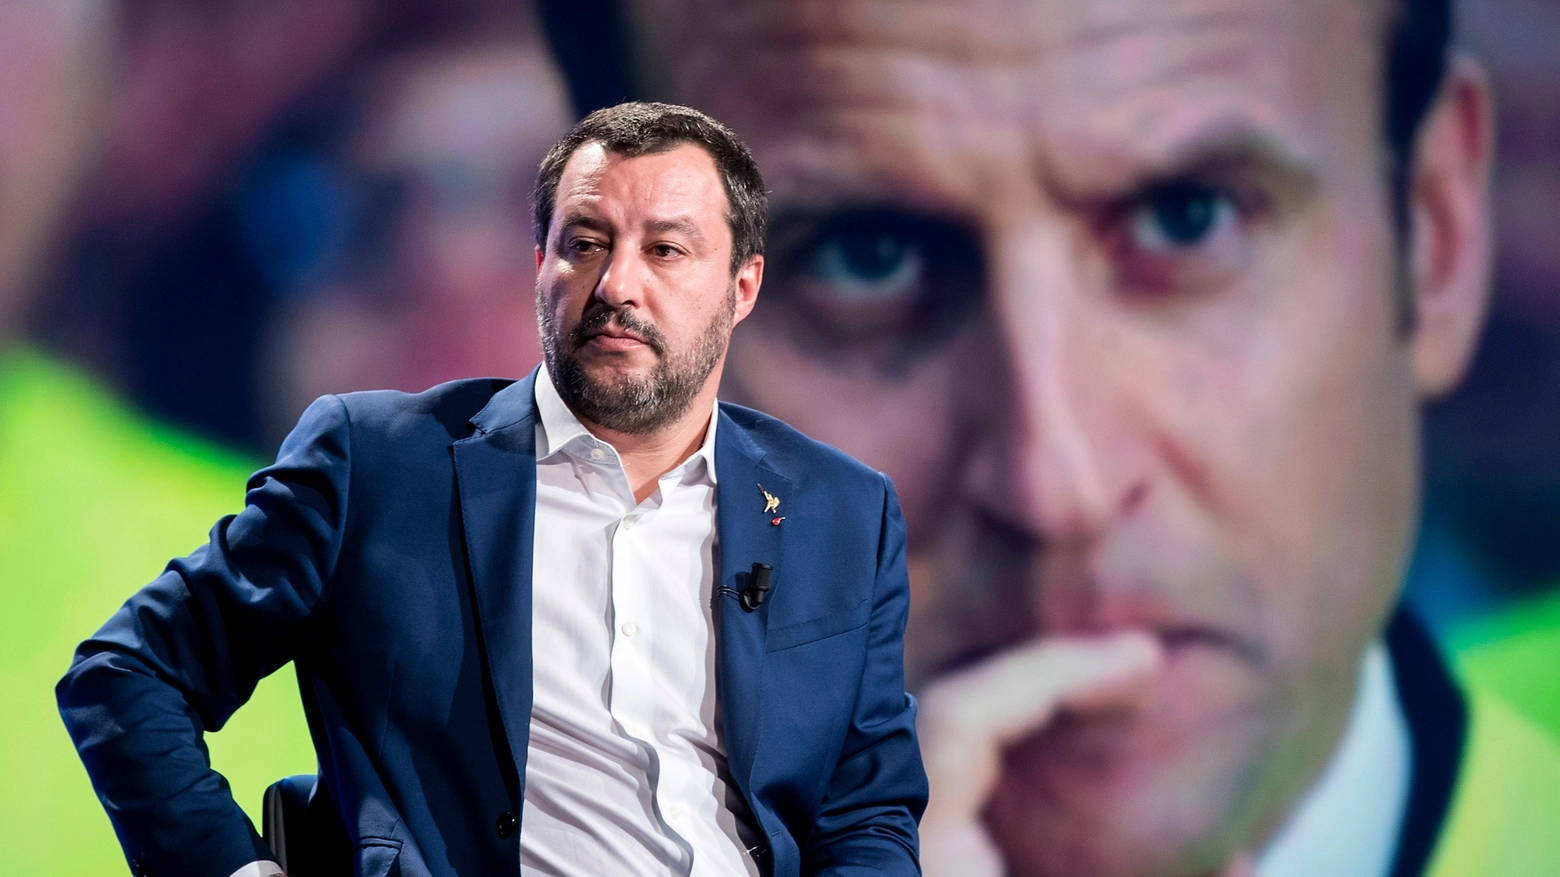 Matteo Salvini davanti a una gigantografia di Macron (Lapresse)